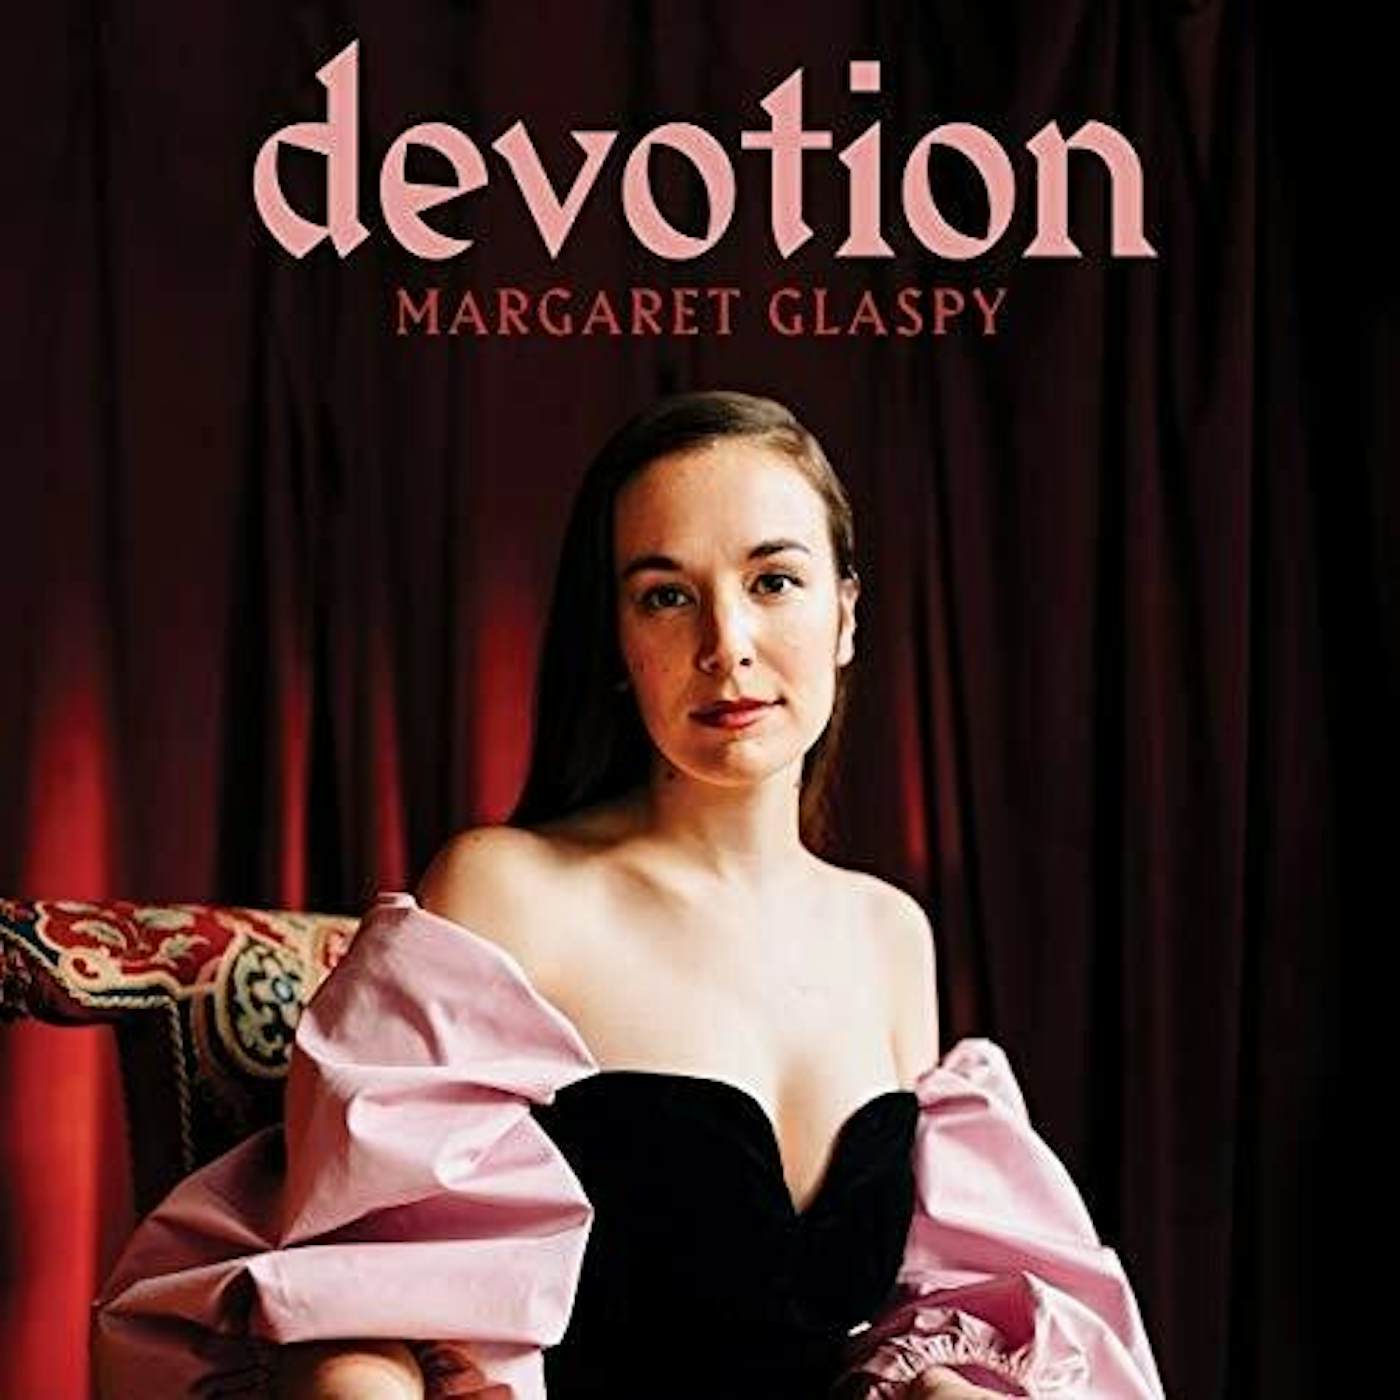 Margaret Glaspy Devotion Vinyl Record